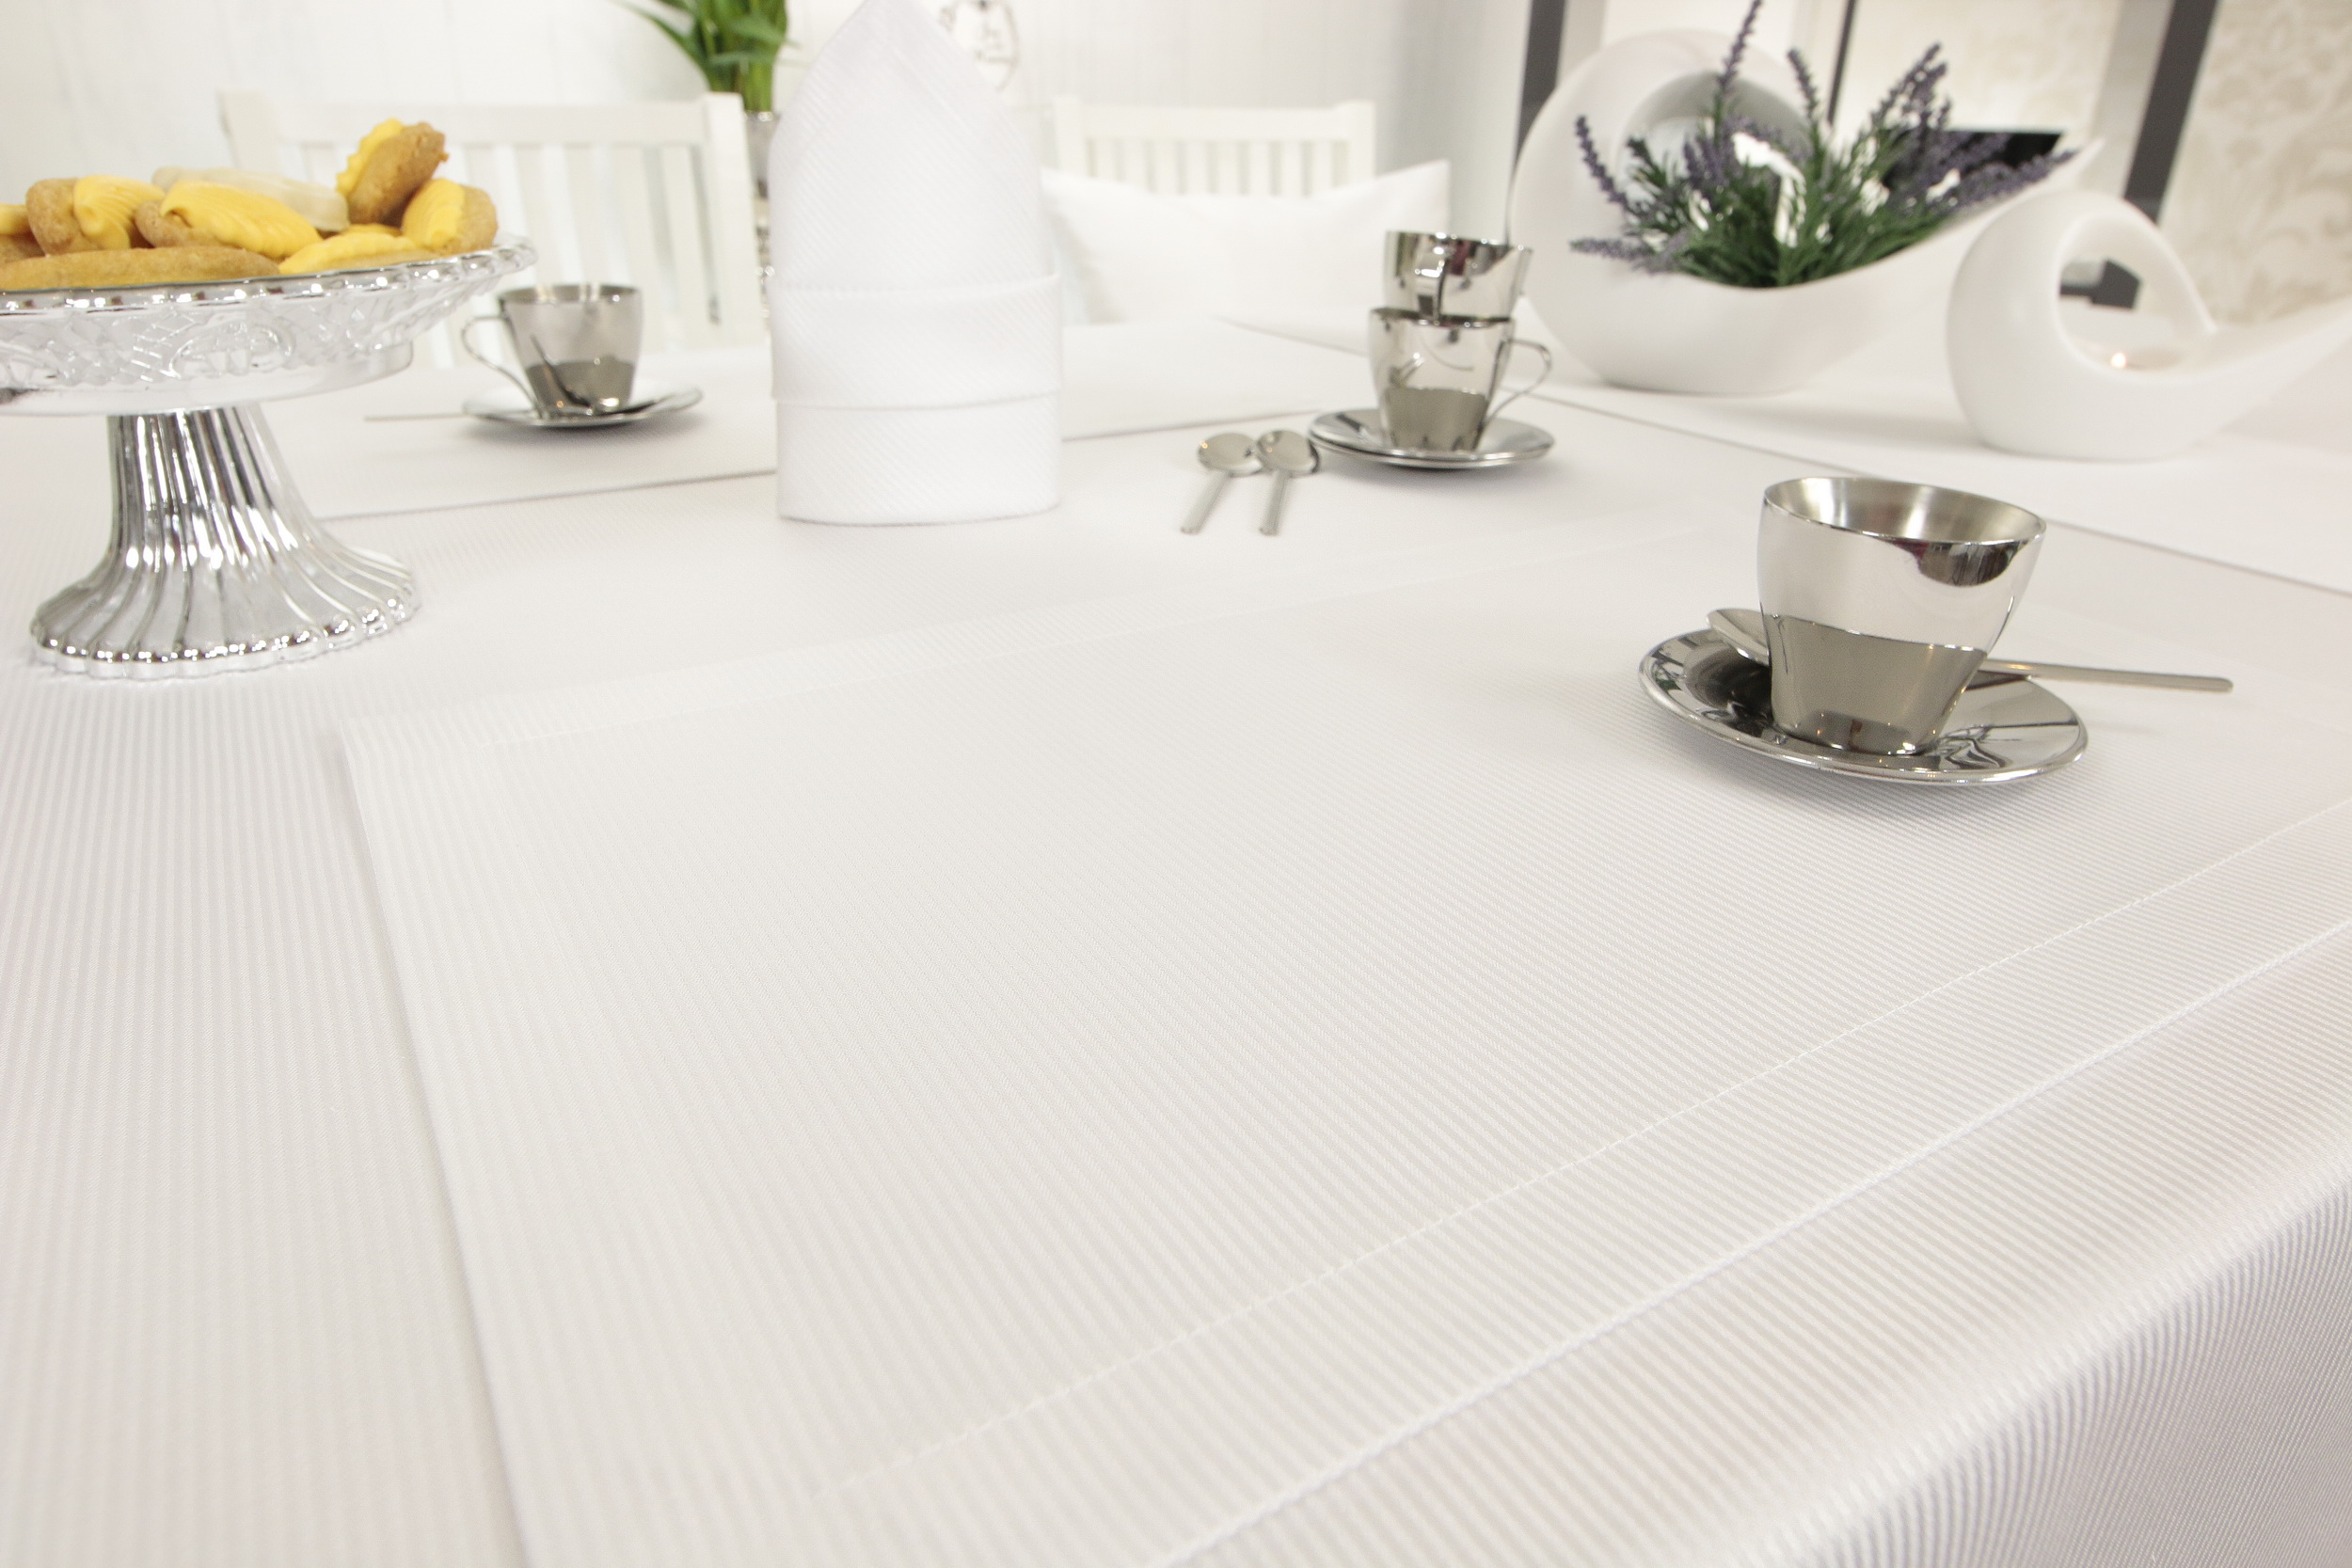 Damast Tischset Weiß gestreift SCIDA Größe 32x42 cm